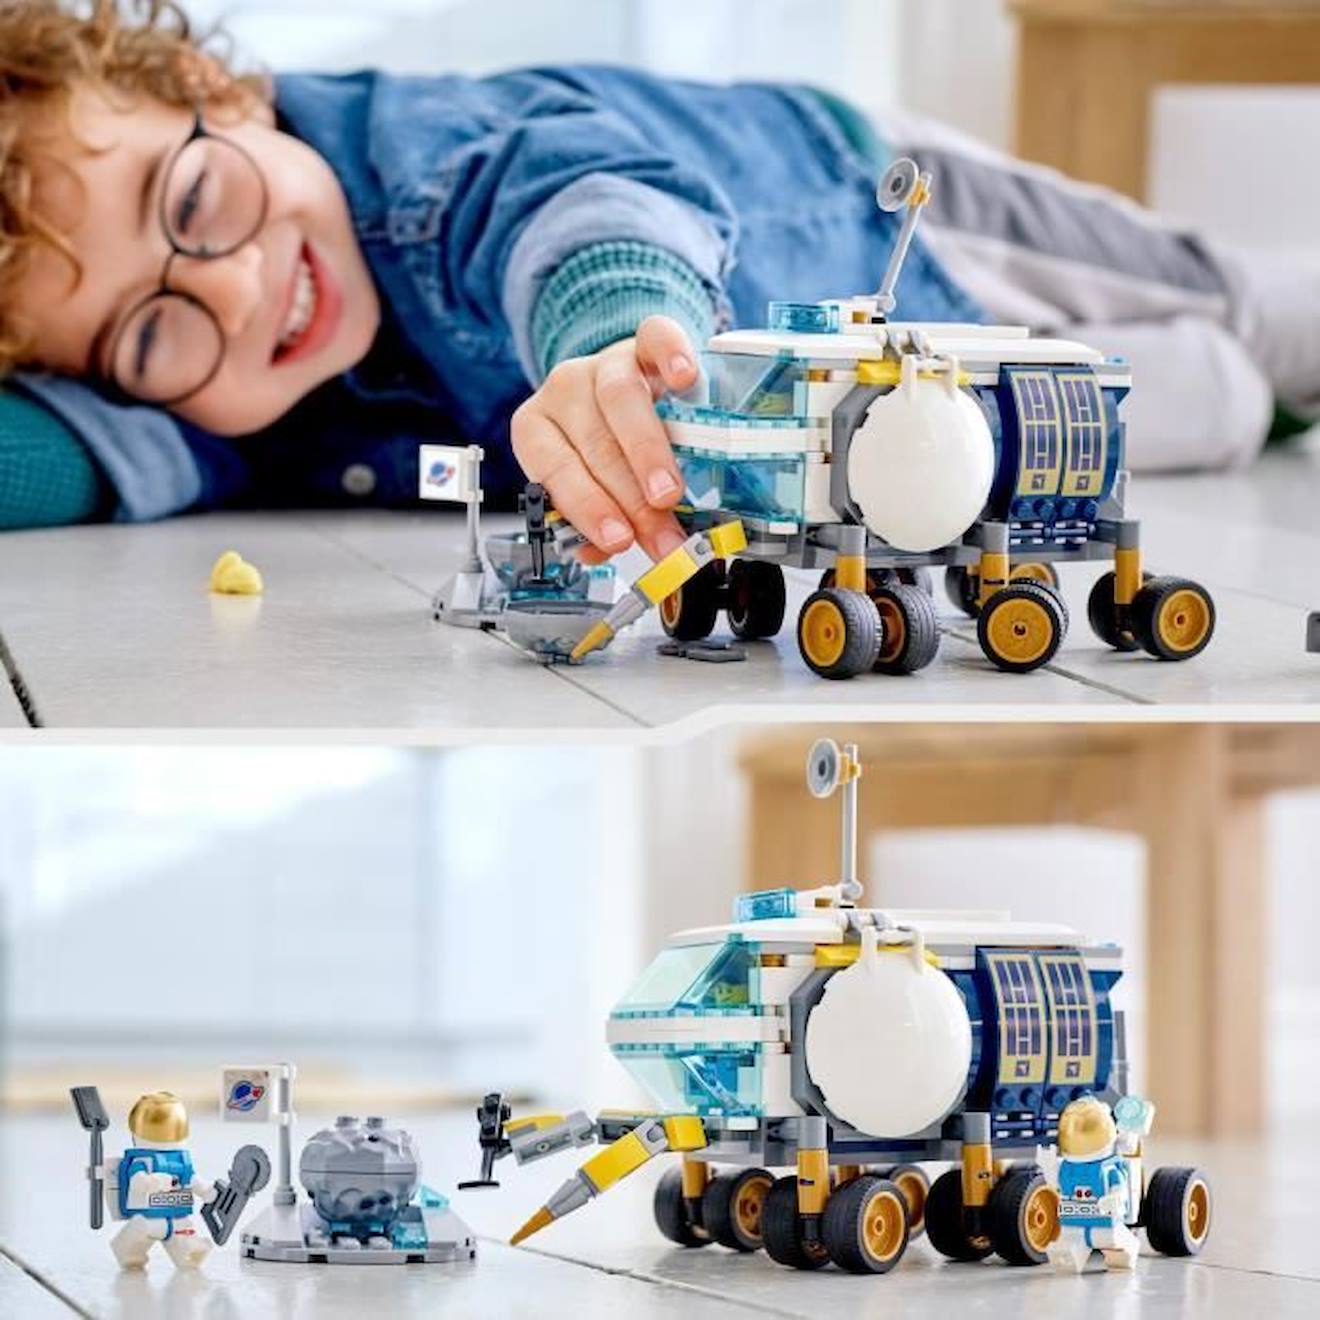 LEGO 60348 City Le Véhicule D'Exploration Lunaire, Jouet sur l'espace  Inspiré de la NASA pour Les Enfants de 6 Ans et Plus, avec 3 Minifigurines  d'Astronautes, Idée Cadeau Garçons et Filles 